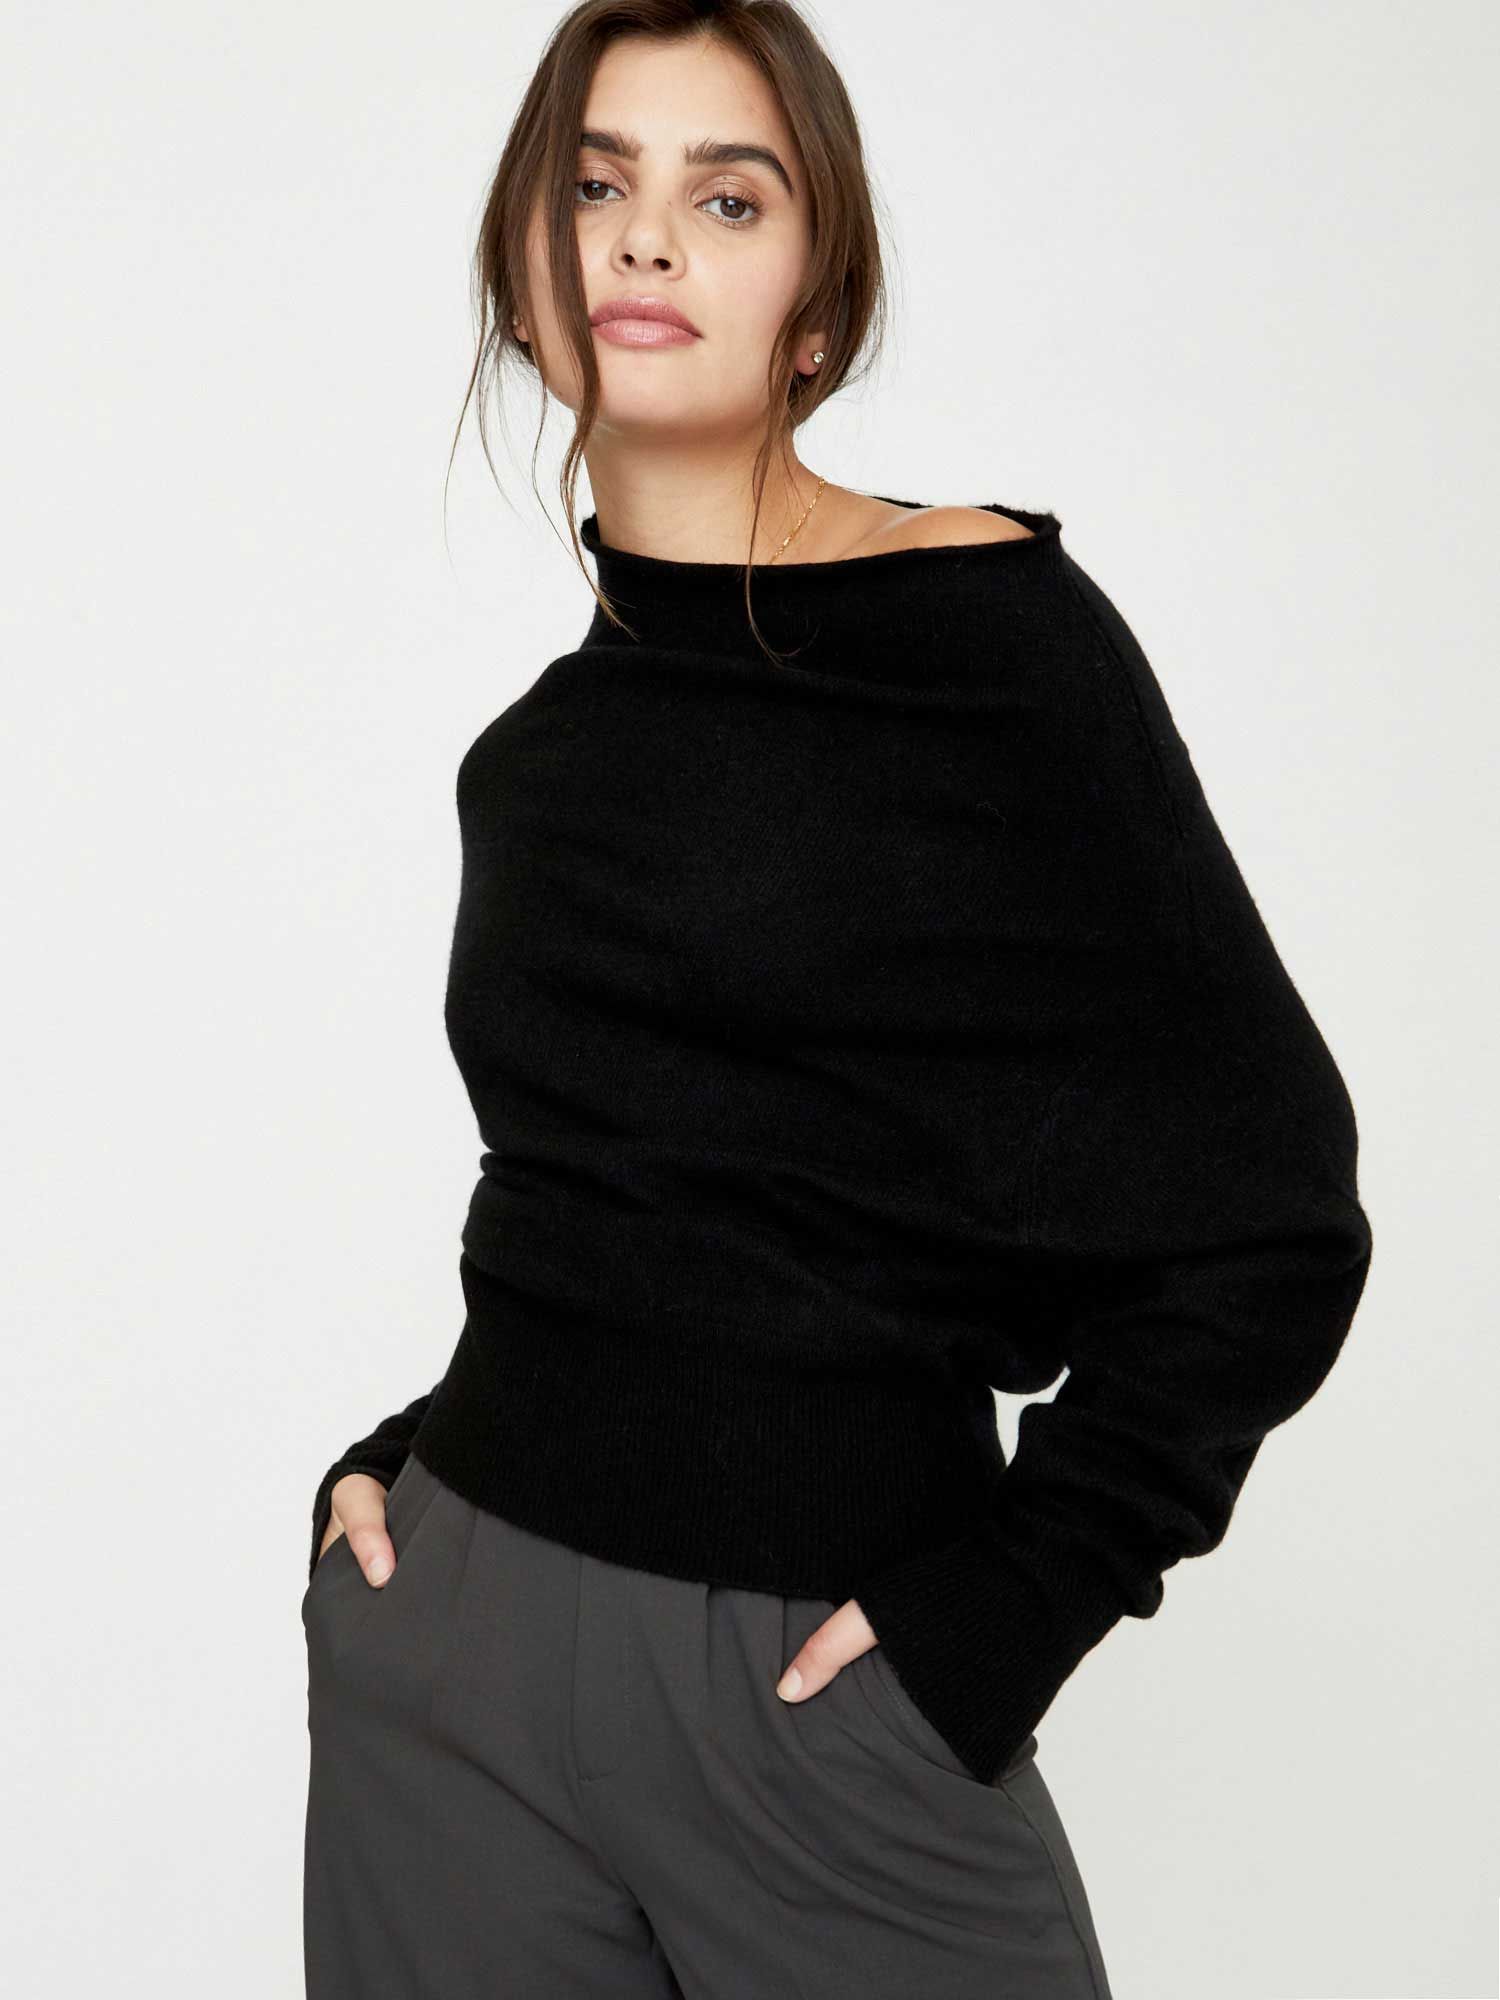 Brochu Walker Women's Off Shoulder Cashmere Sweater in Black | Brochu Walker